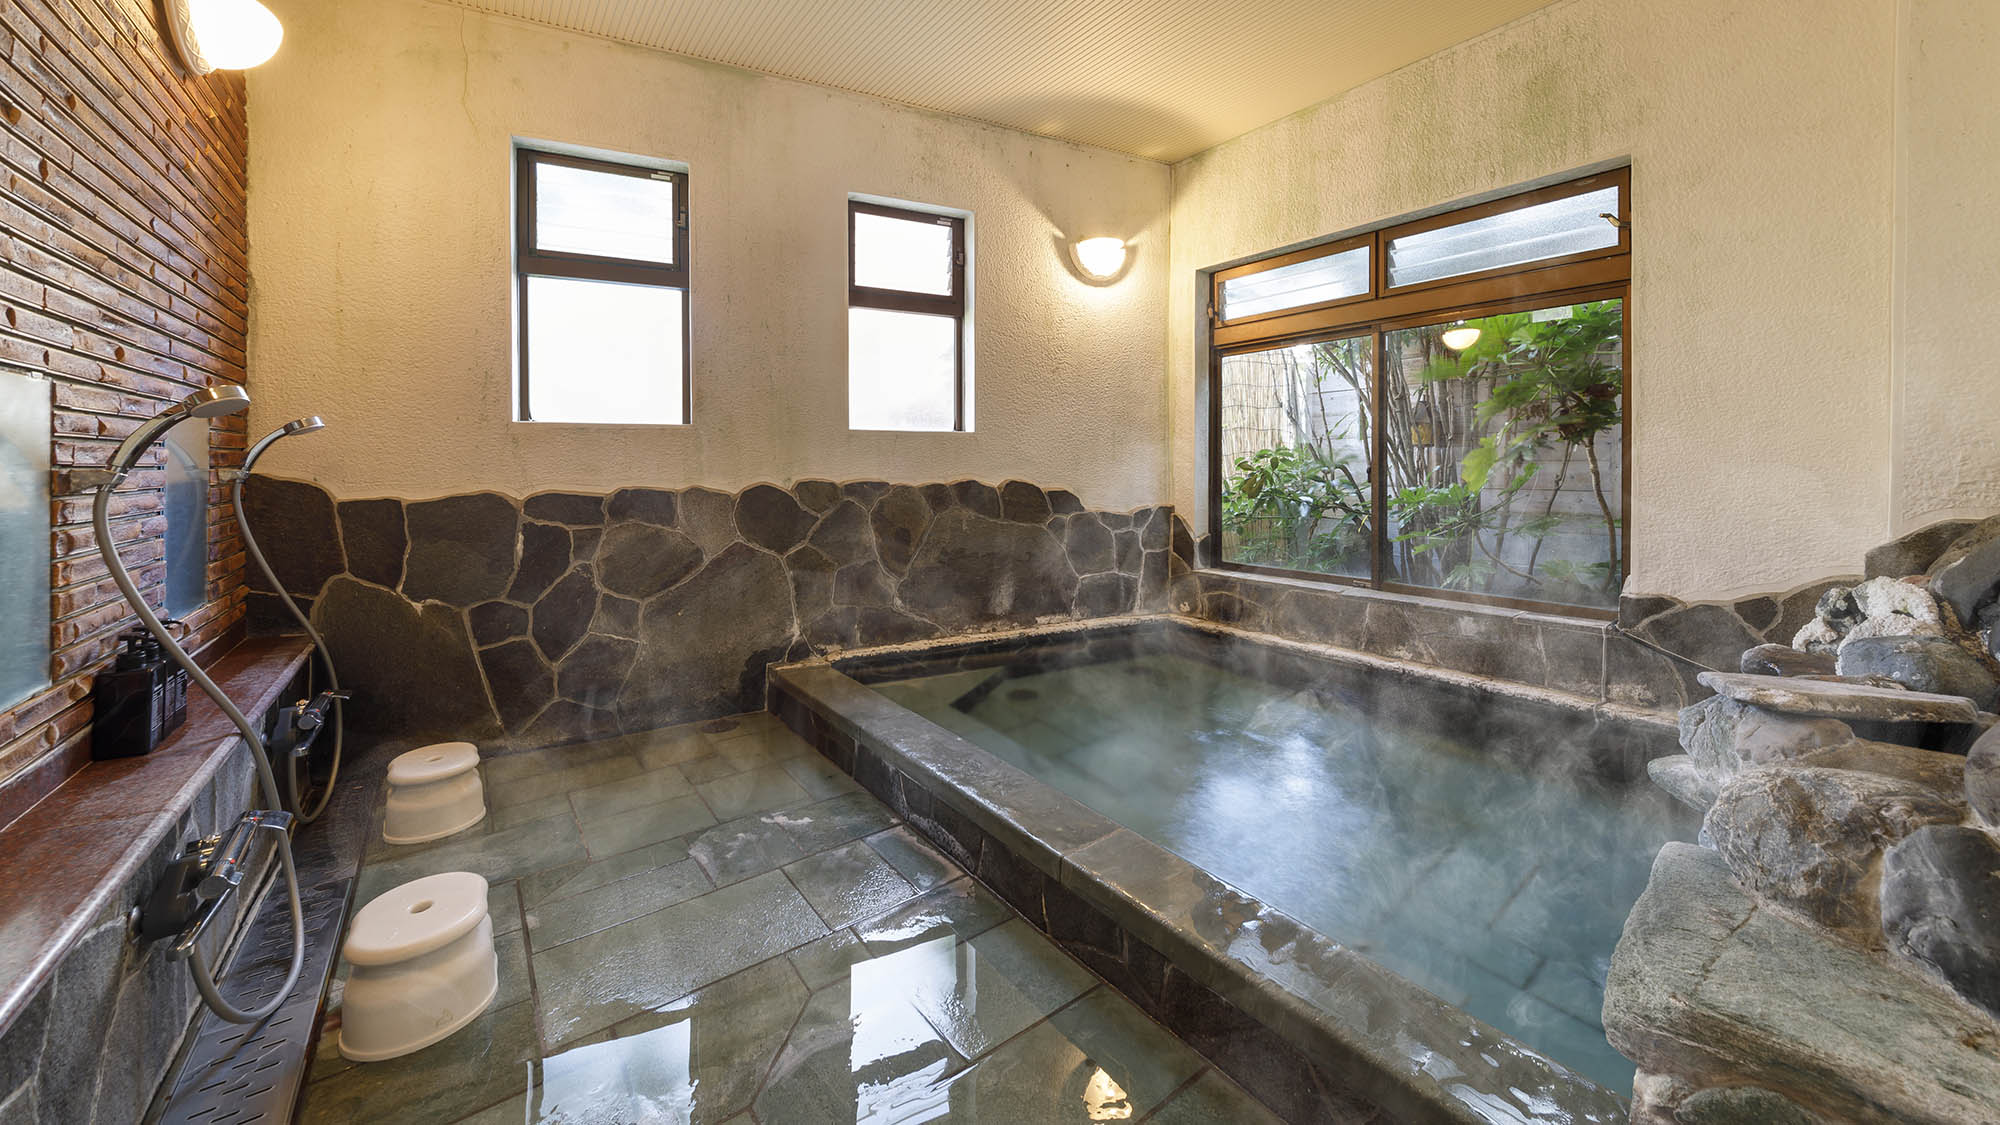 ・【内湯】源泉掛け流しの松崎温泉が惜しみなく注がれています。窓から広がる自然もご堪能ください